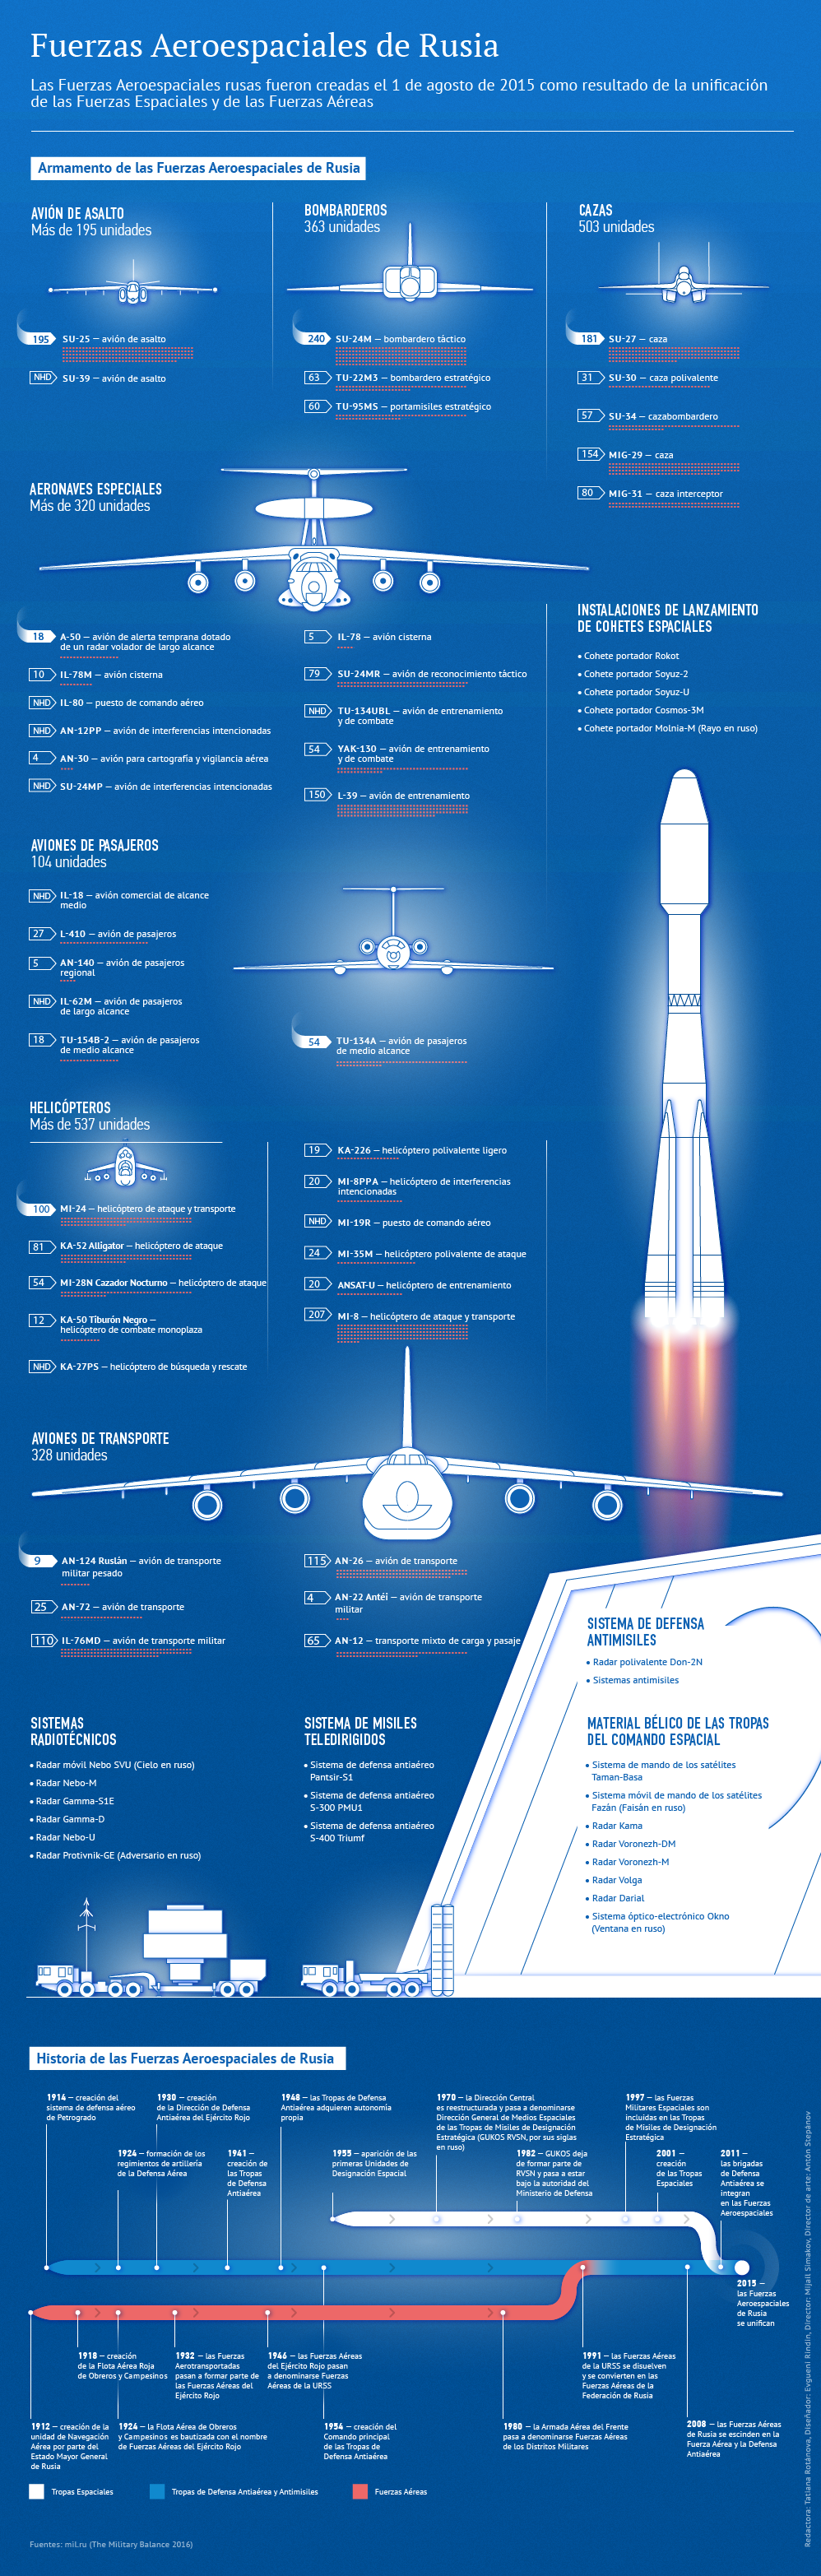 Fuerzas Aeroespaciales de Rusia: historia y armamento - Sputnik Mundo